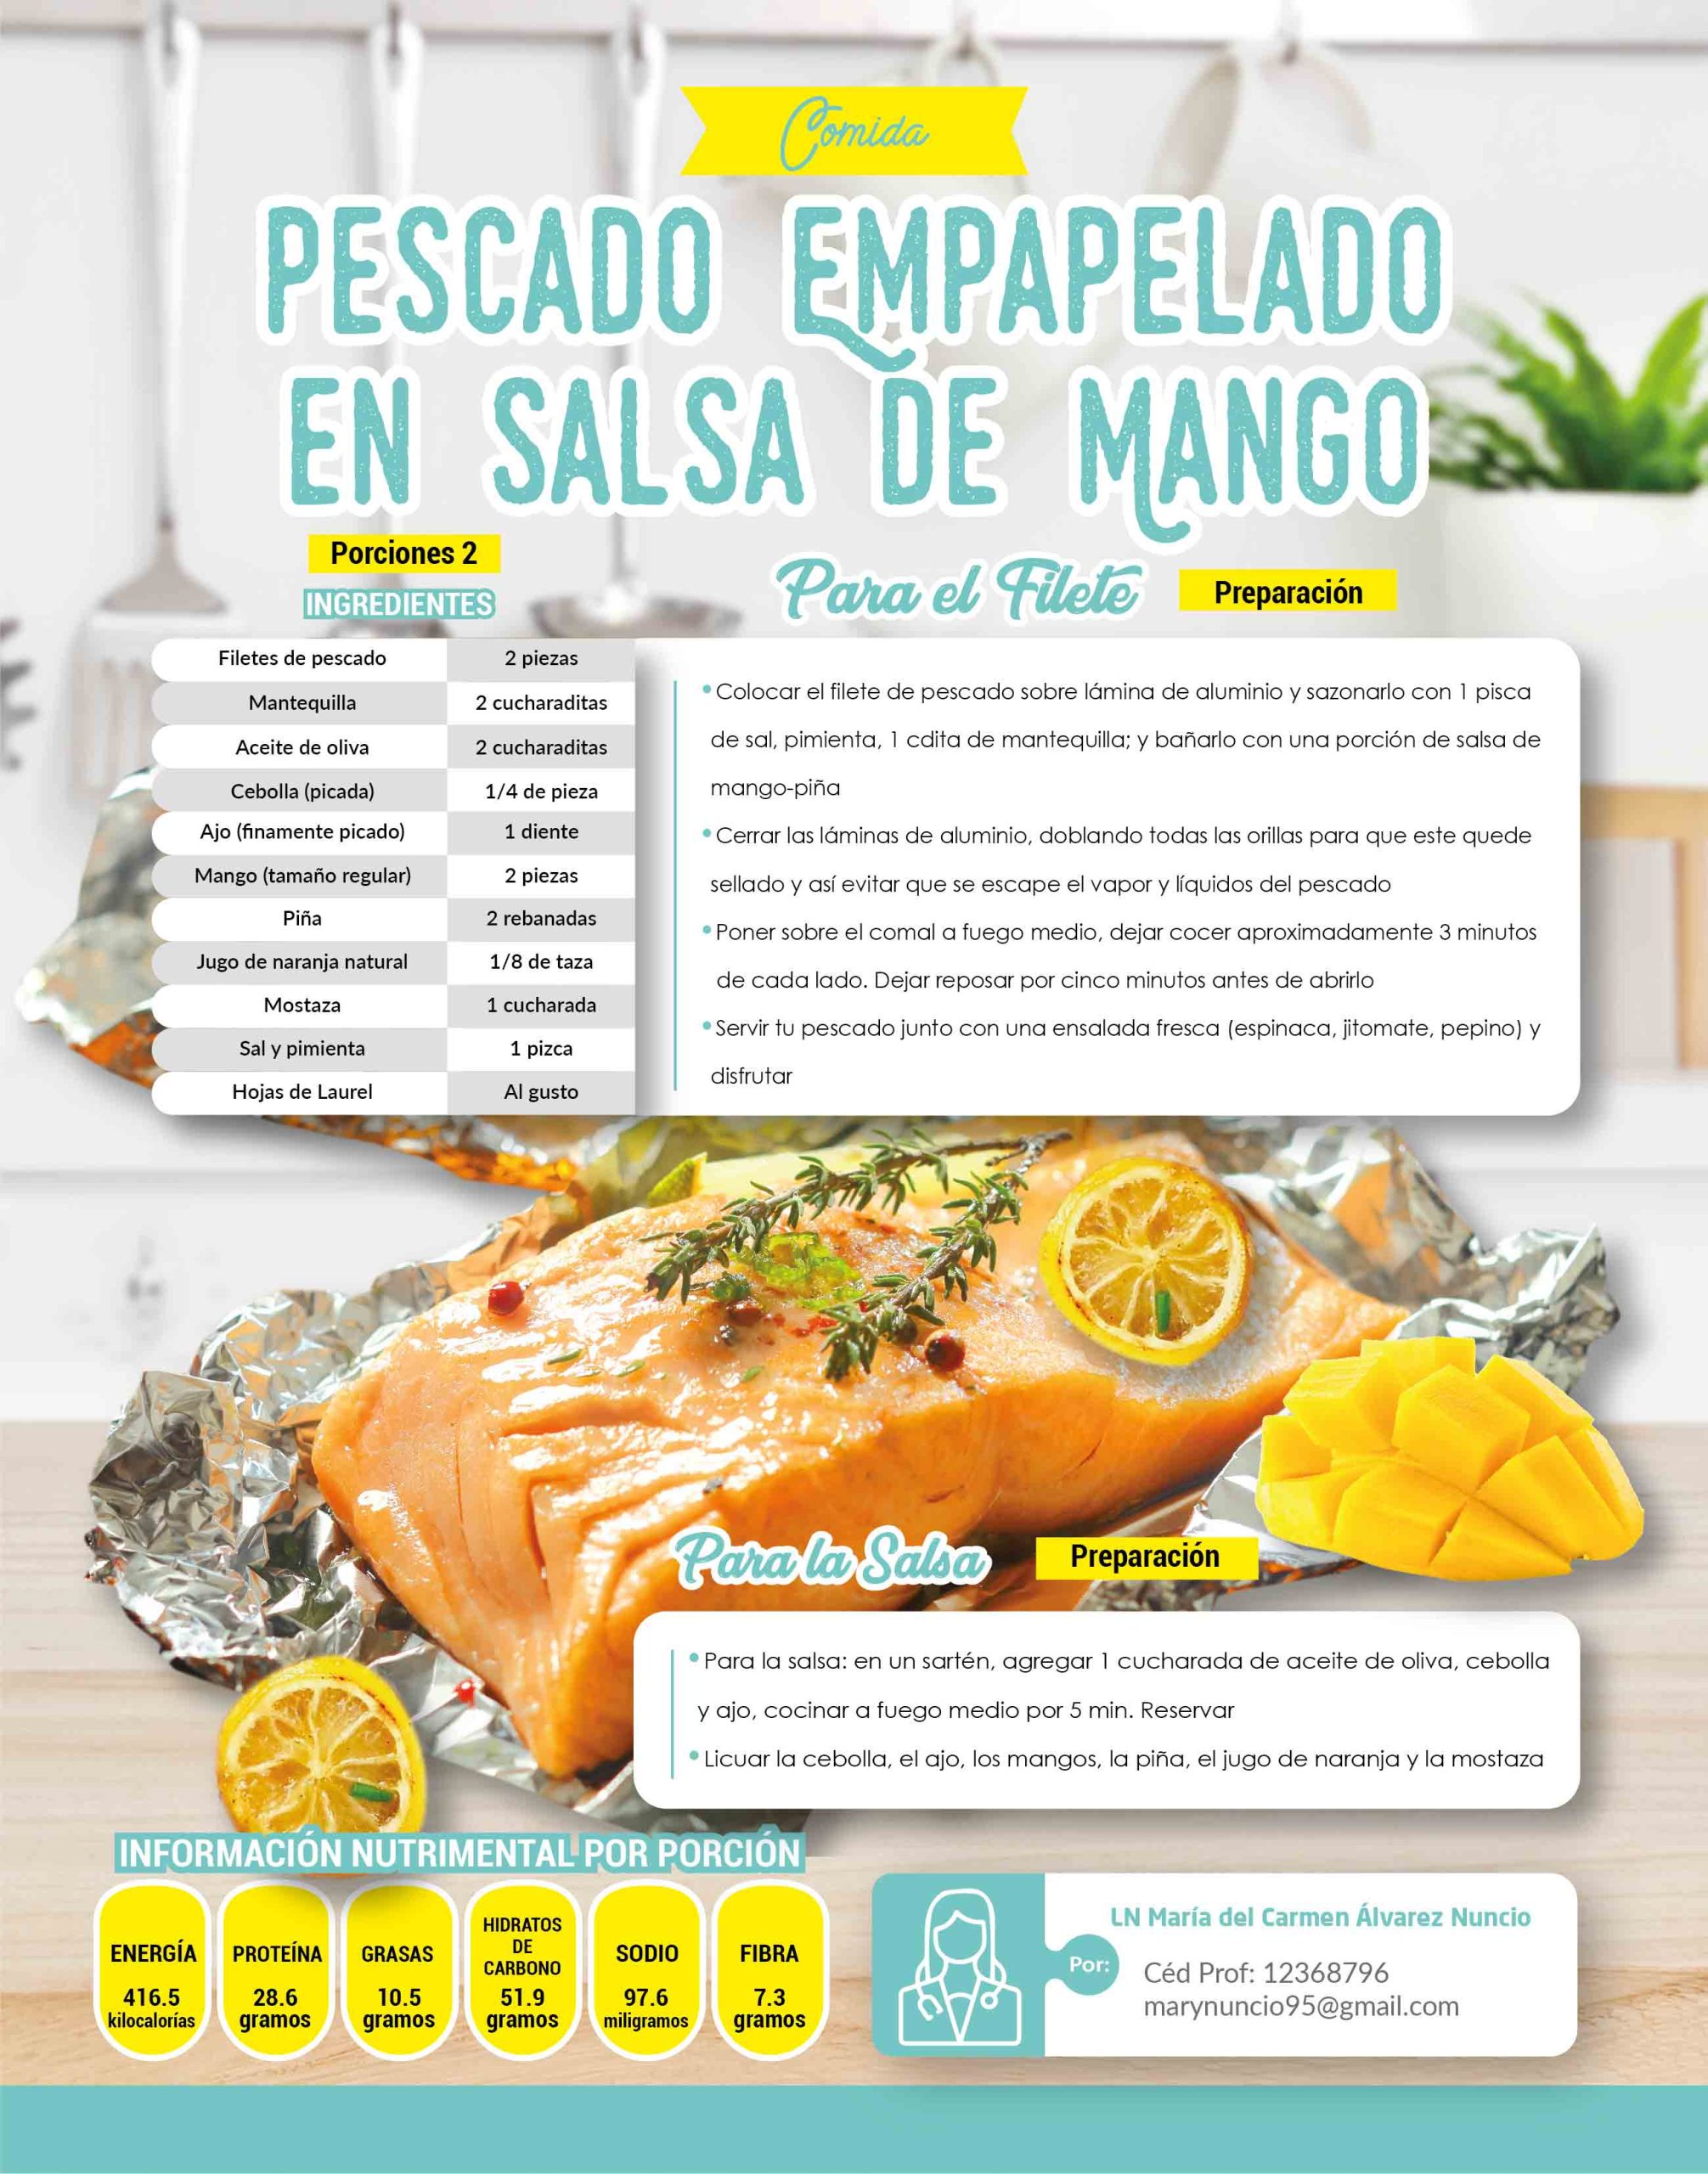 Pescado empapelado en salsa de mango - Revista Diabetes Hoy